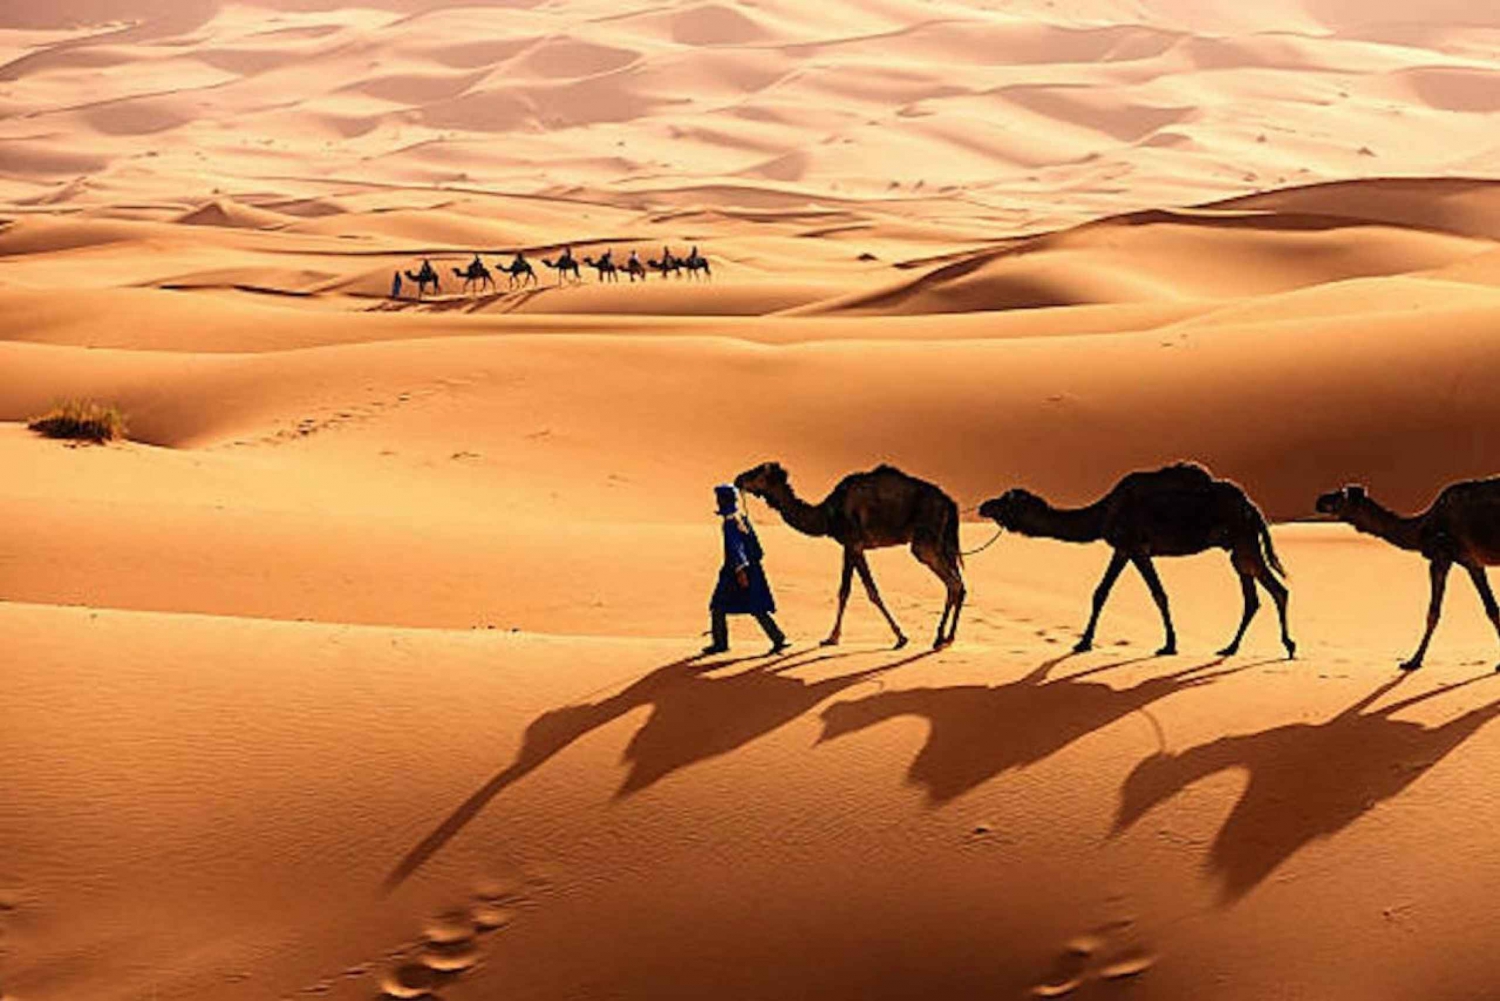 From Marrakech: 3-Day Luxury Desert Tour to Fes via Merzouga